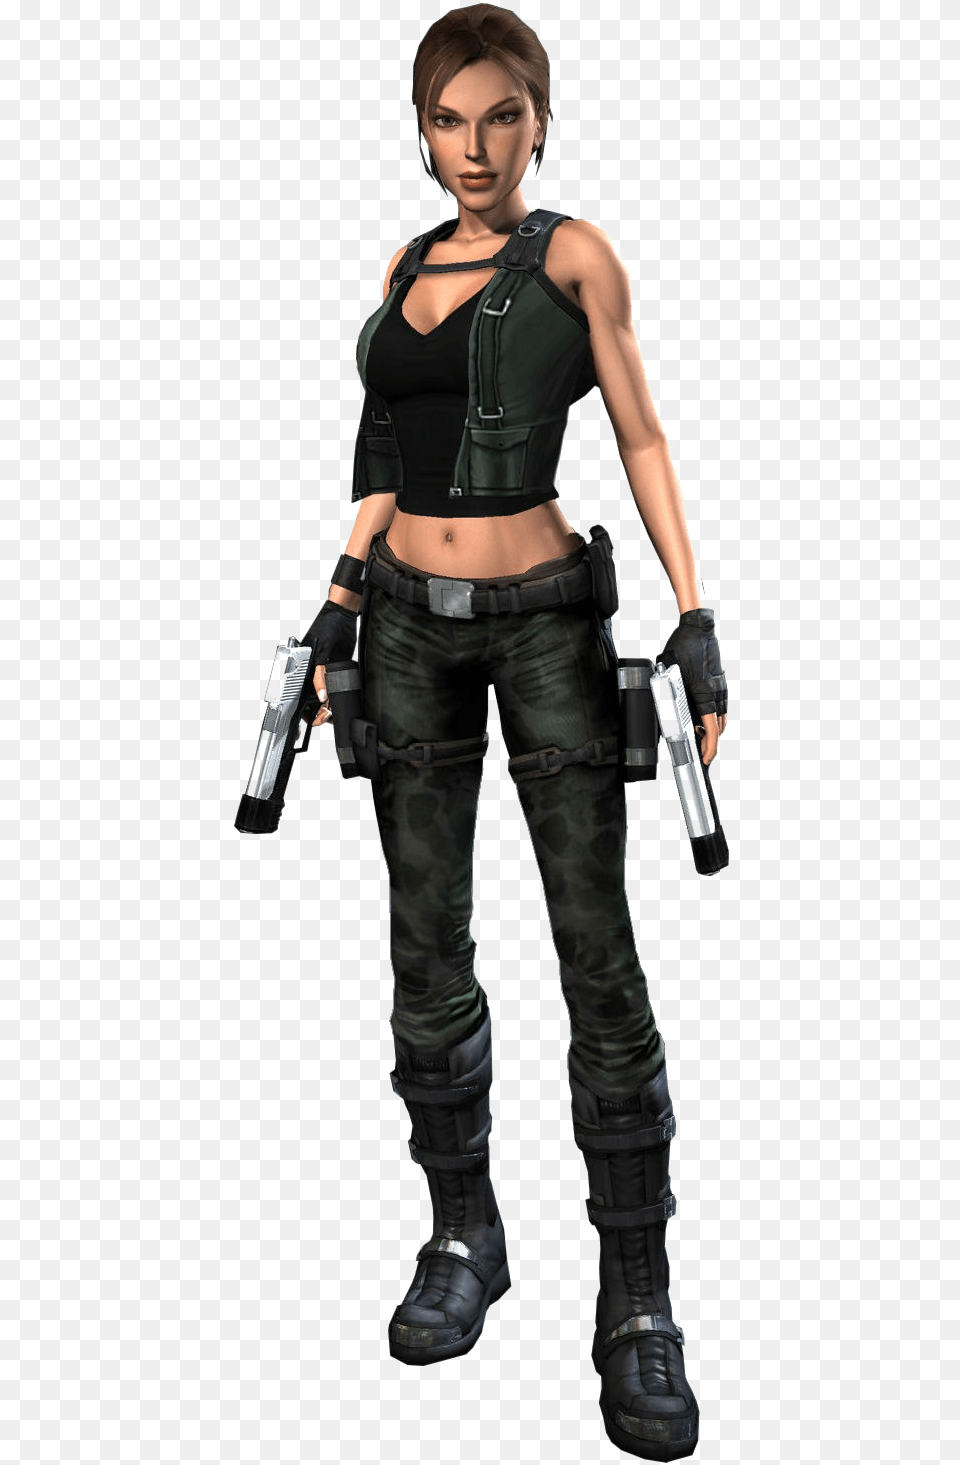 Lara Croft Tomb Raider Background Lara Croft Black Suit, Clothing, Person, Handgun, Gun Free Png Download